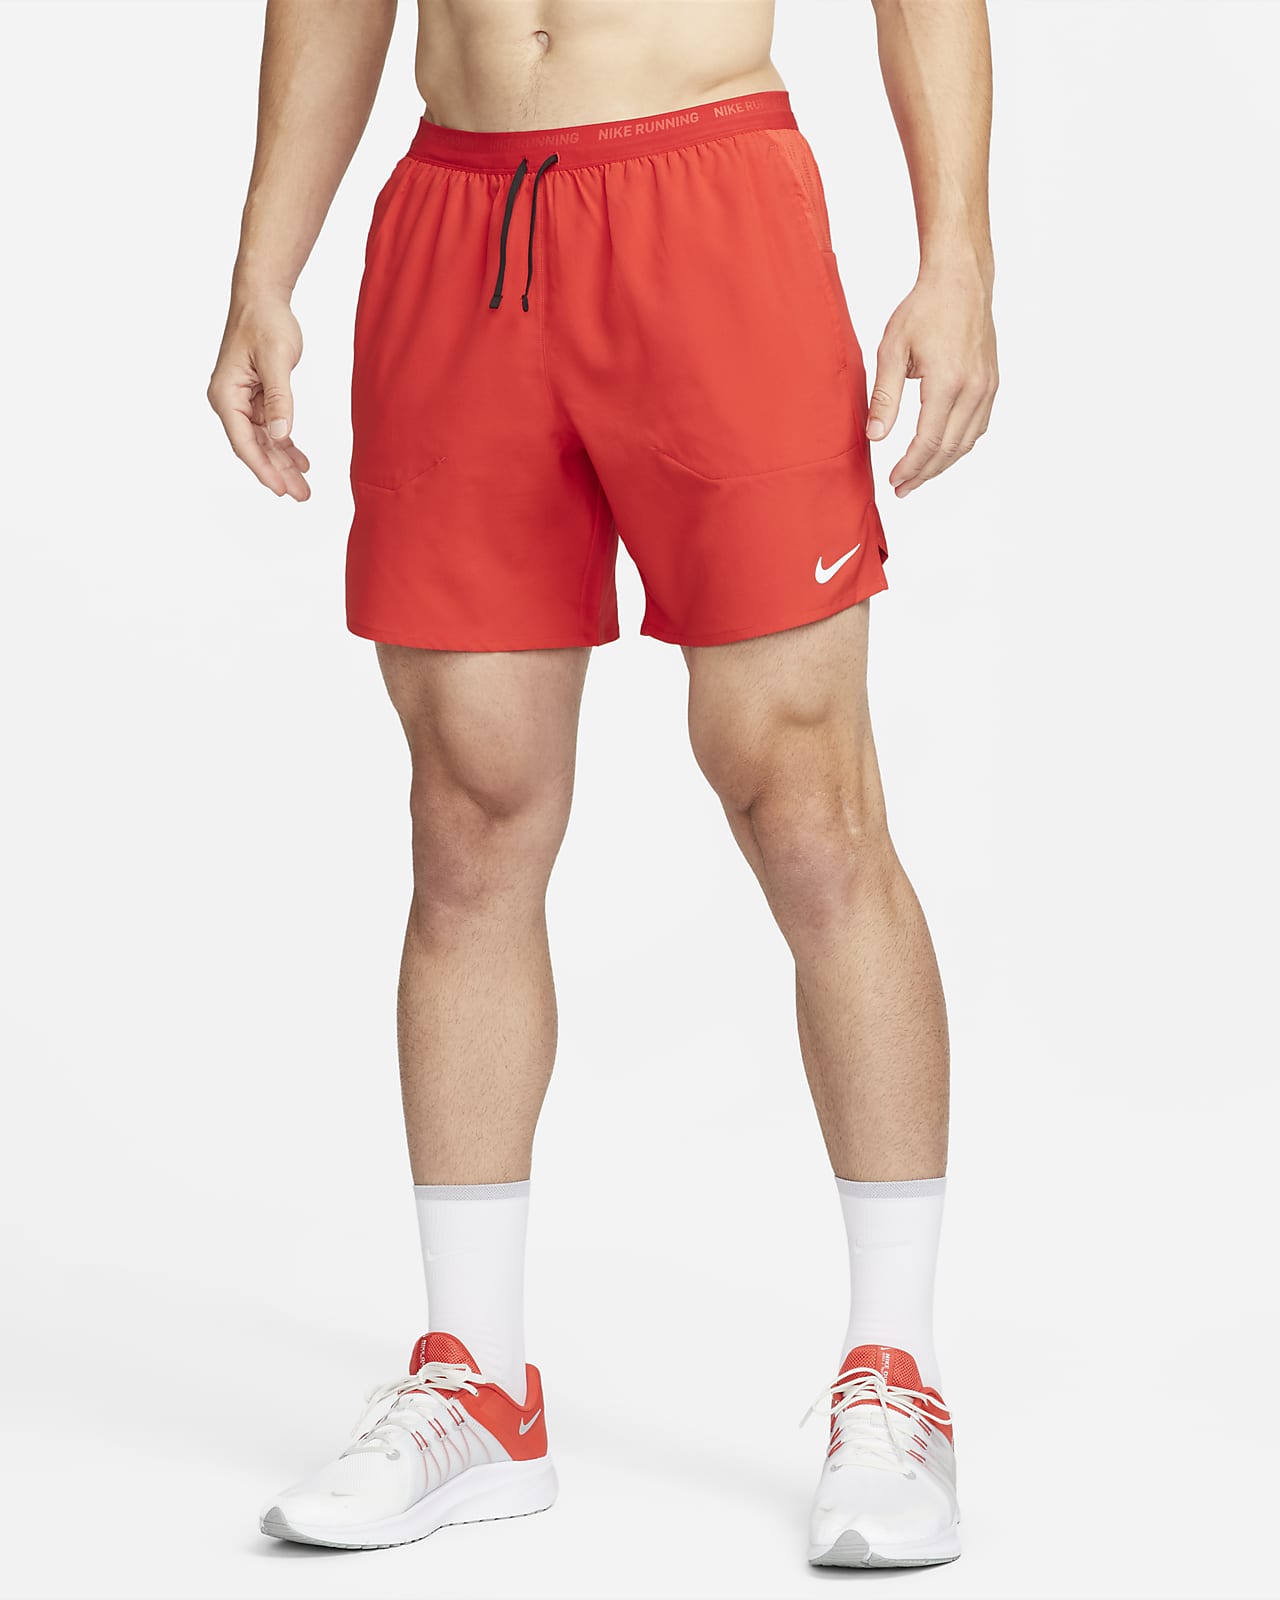 Short de running avec sous-short intégré Nike Dri-FIT Stride 18 cm pour homme